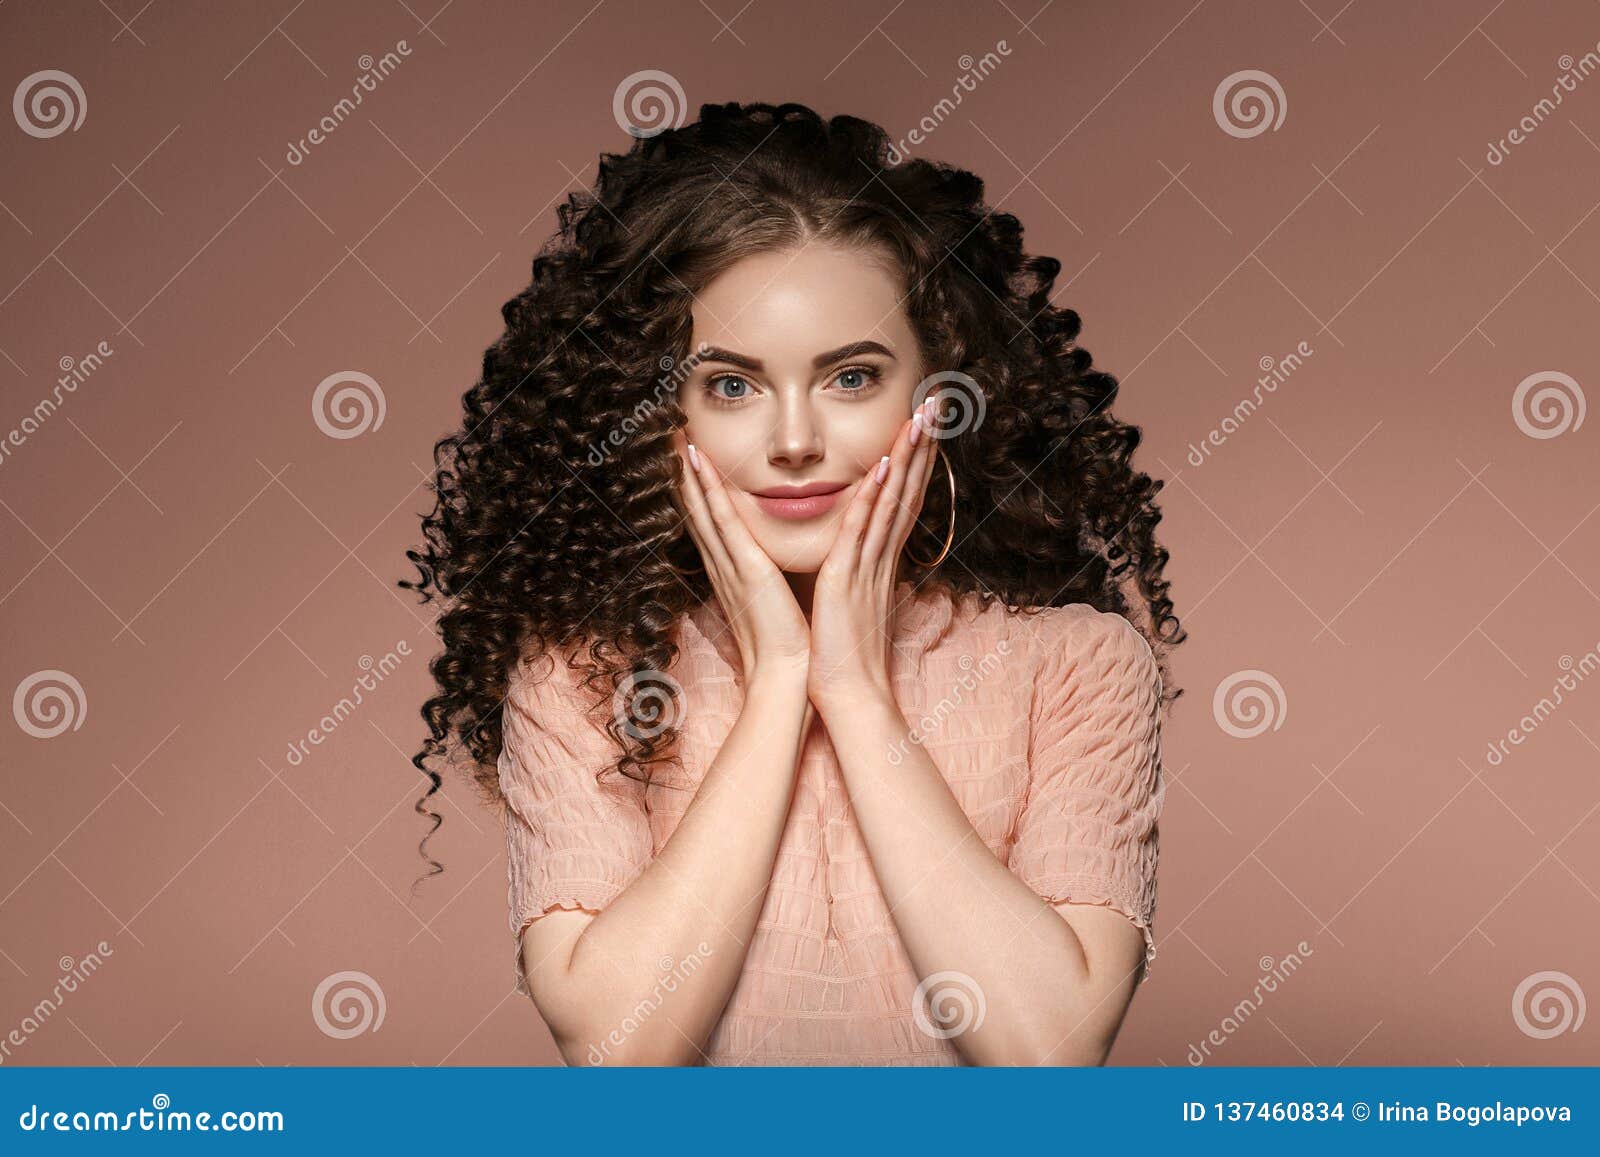 Dame De Coiffure De Femme De Cheveux Boucles Avec De Longs Cheveux De Brune Photo Stock Image Du Avec Femme 137460834